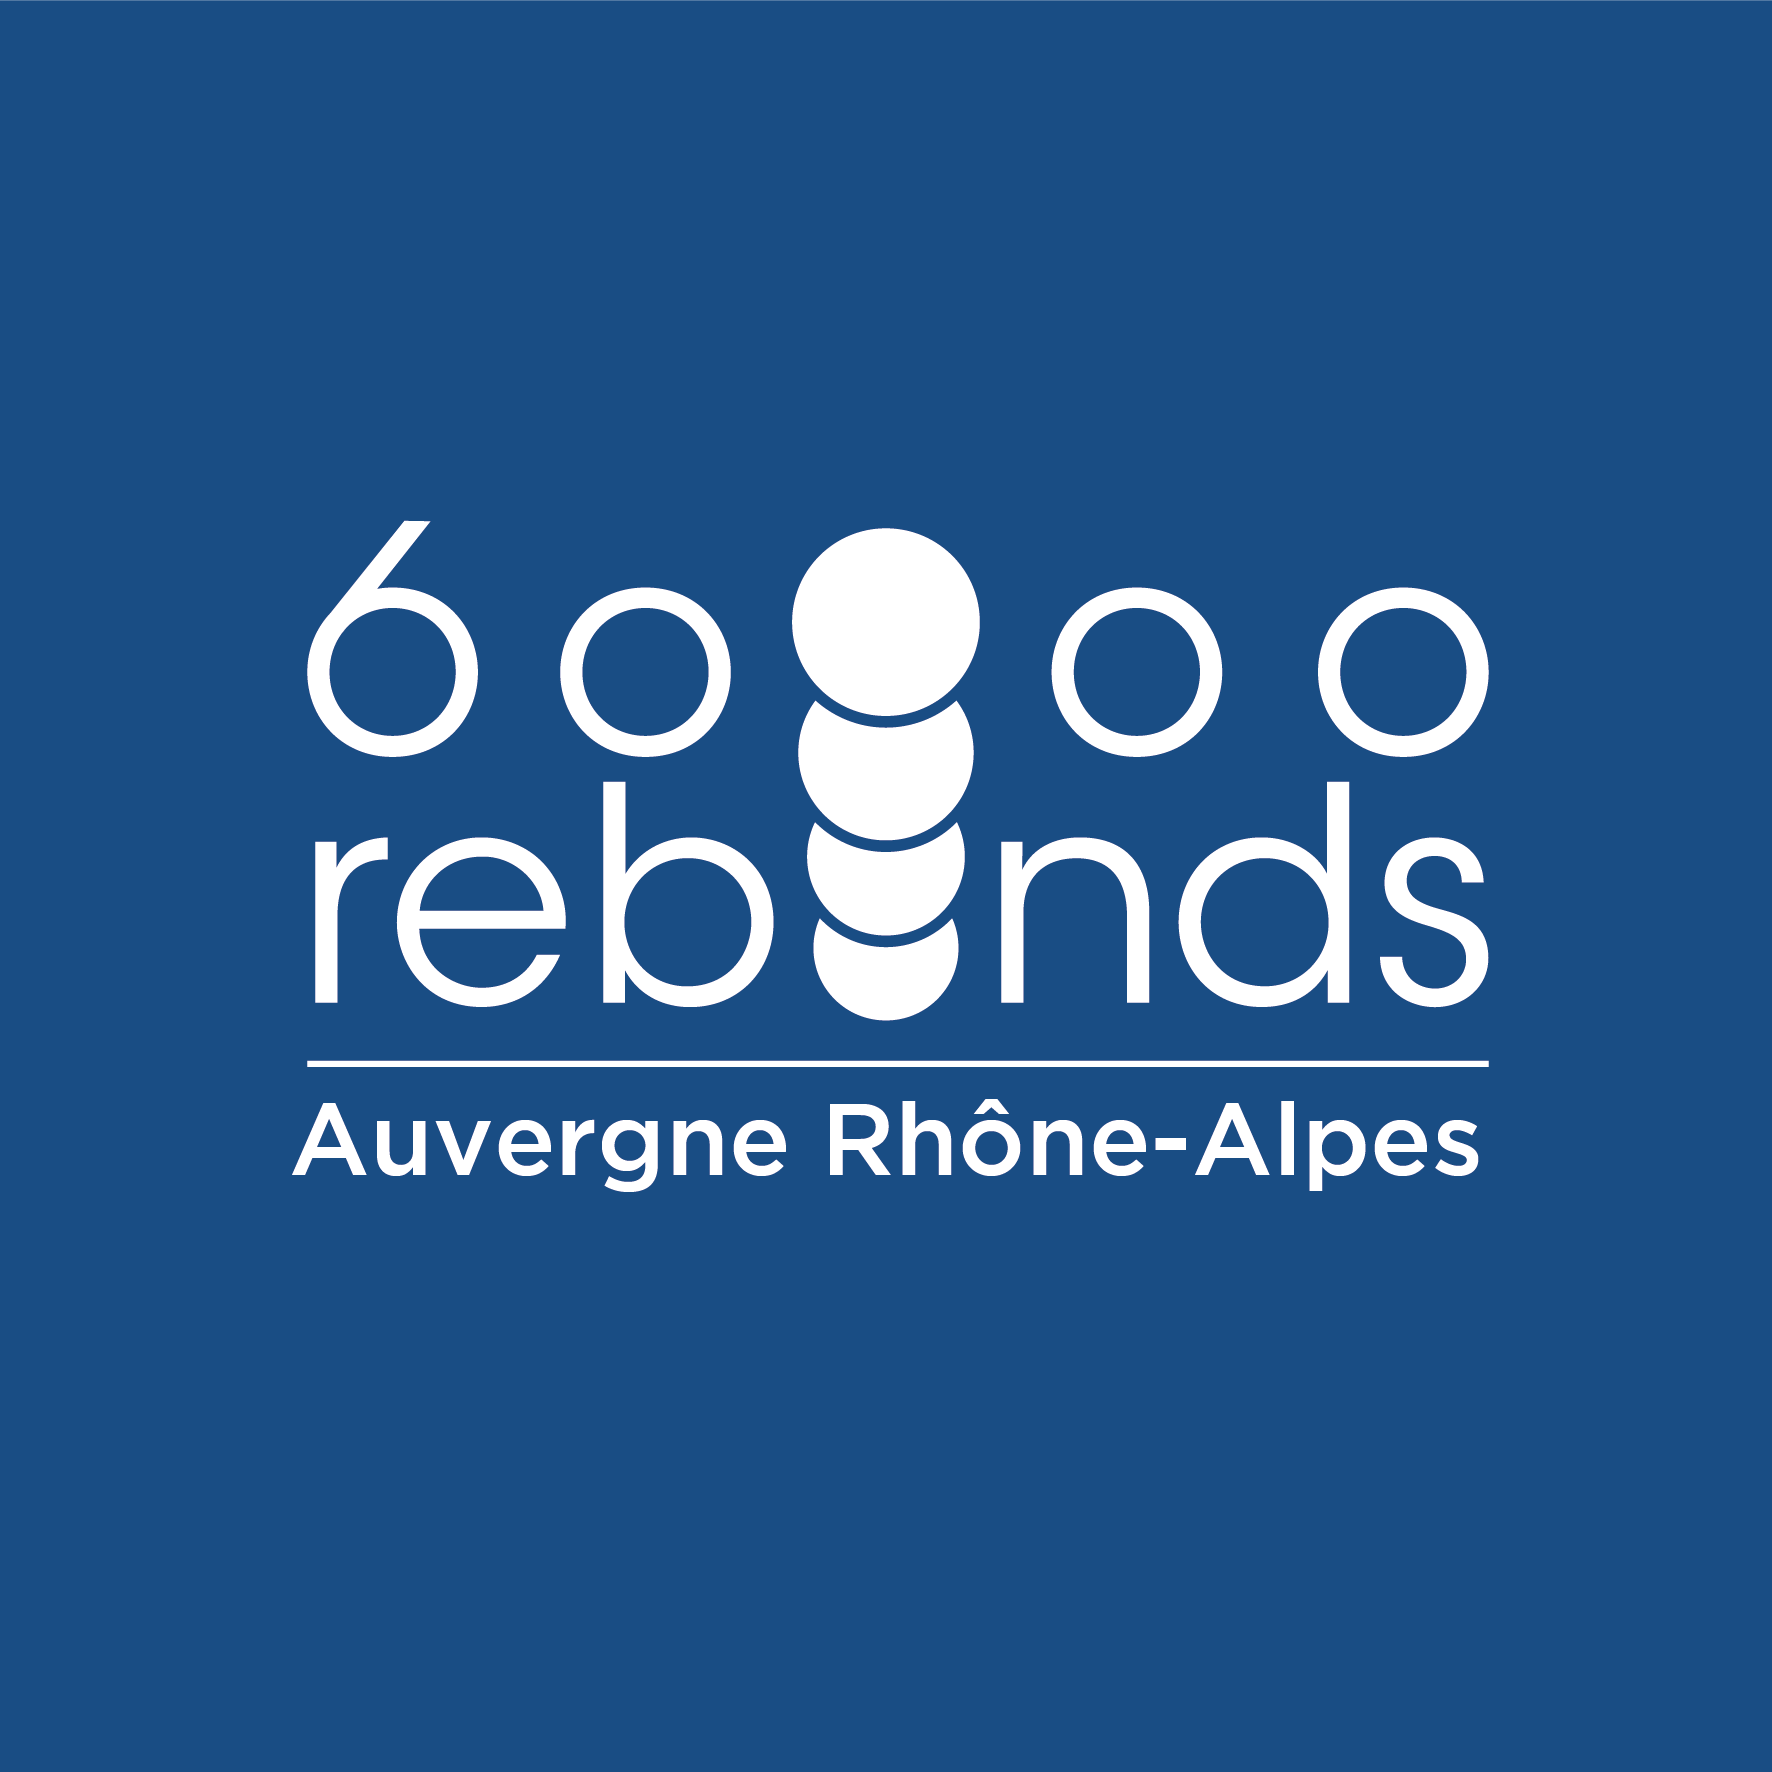 logo 60000 rebonds